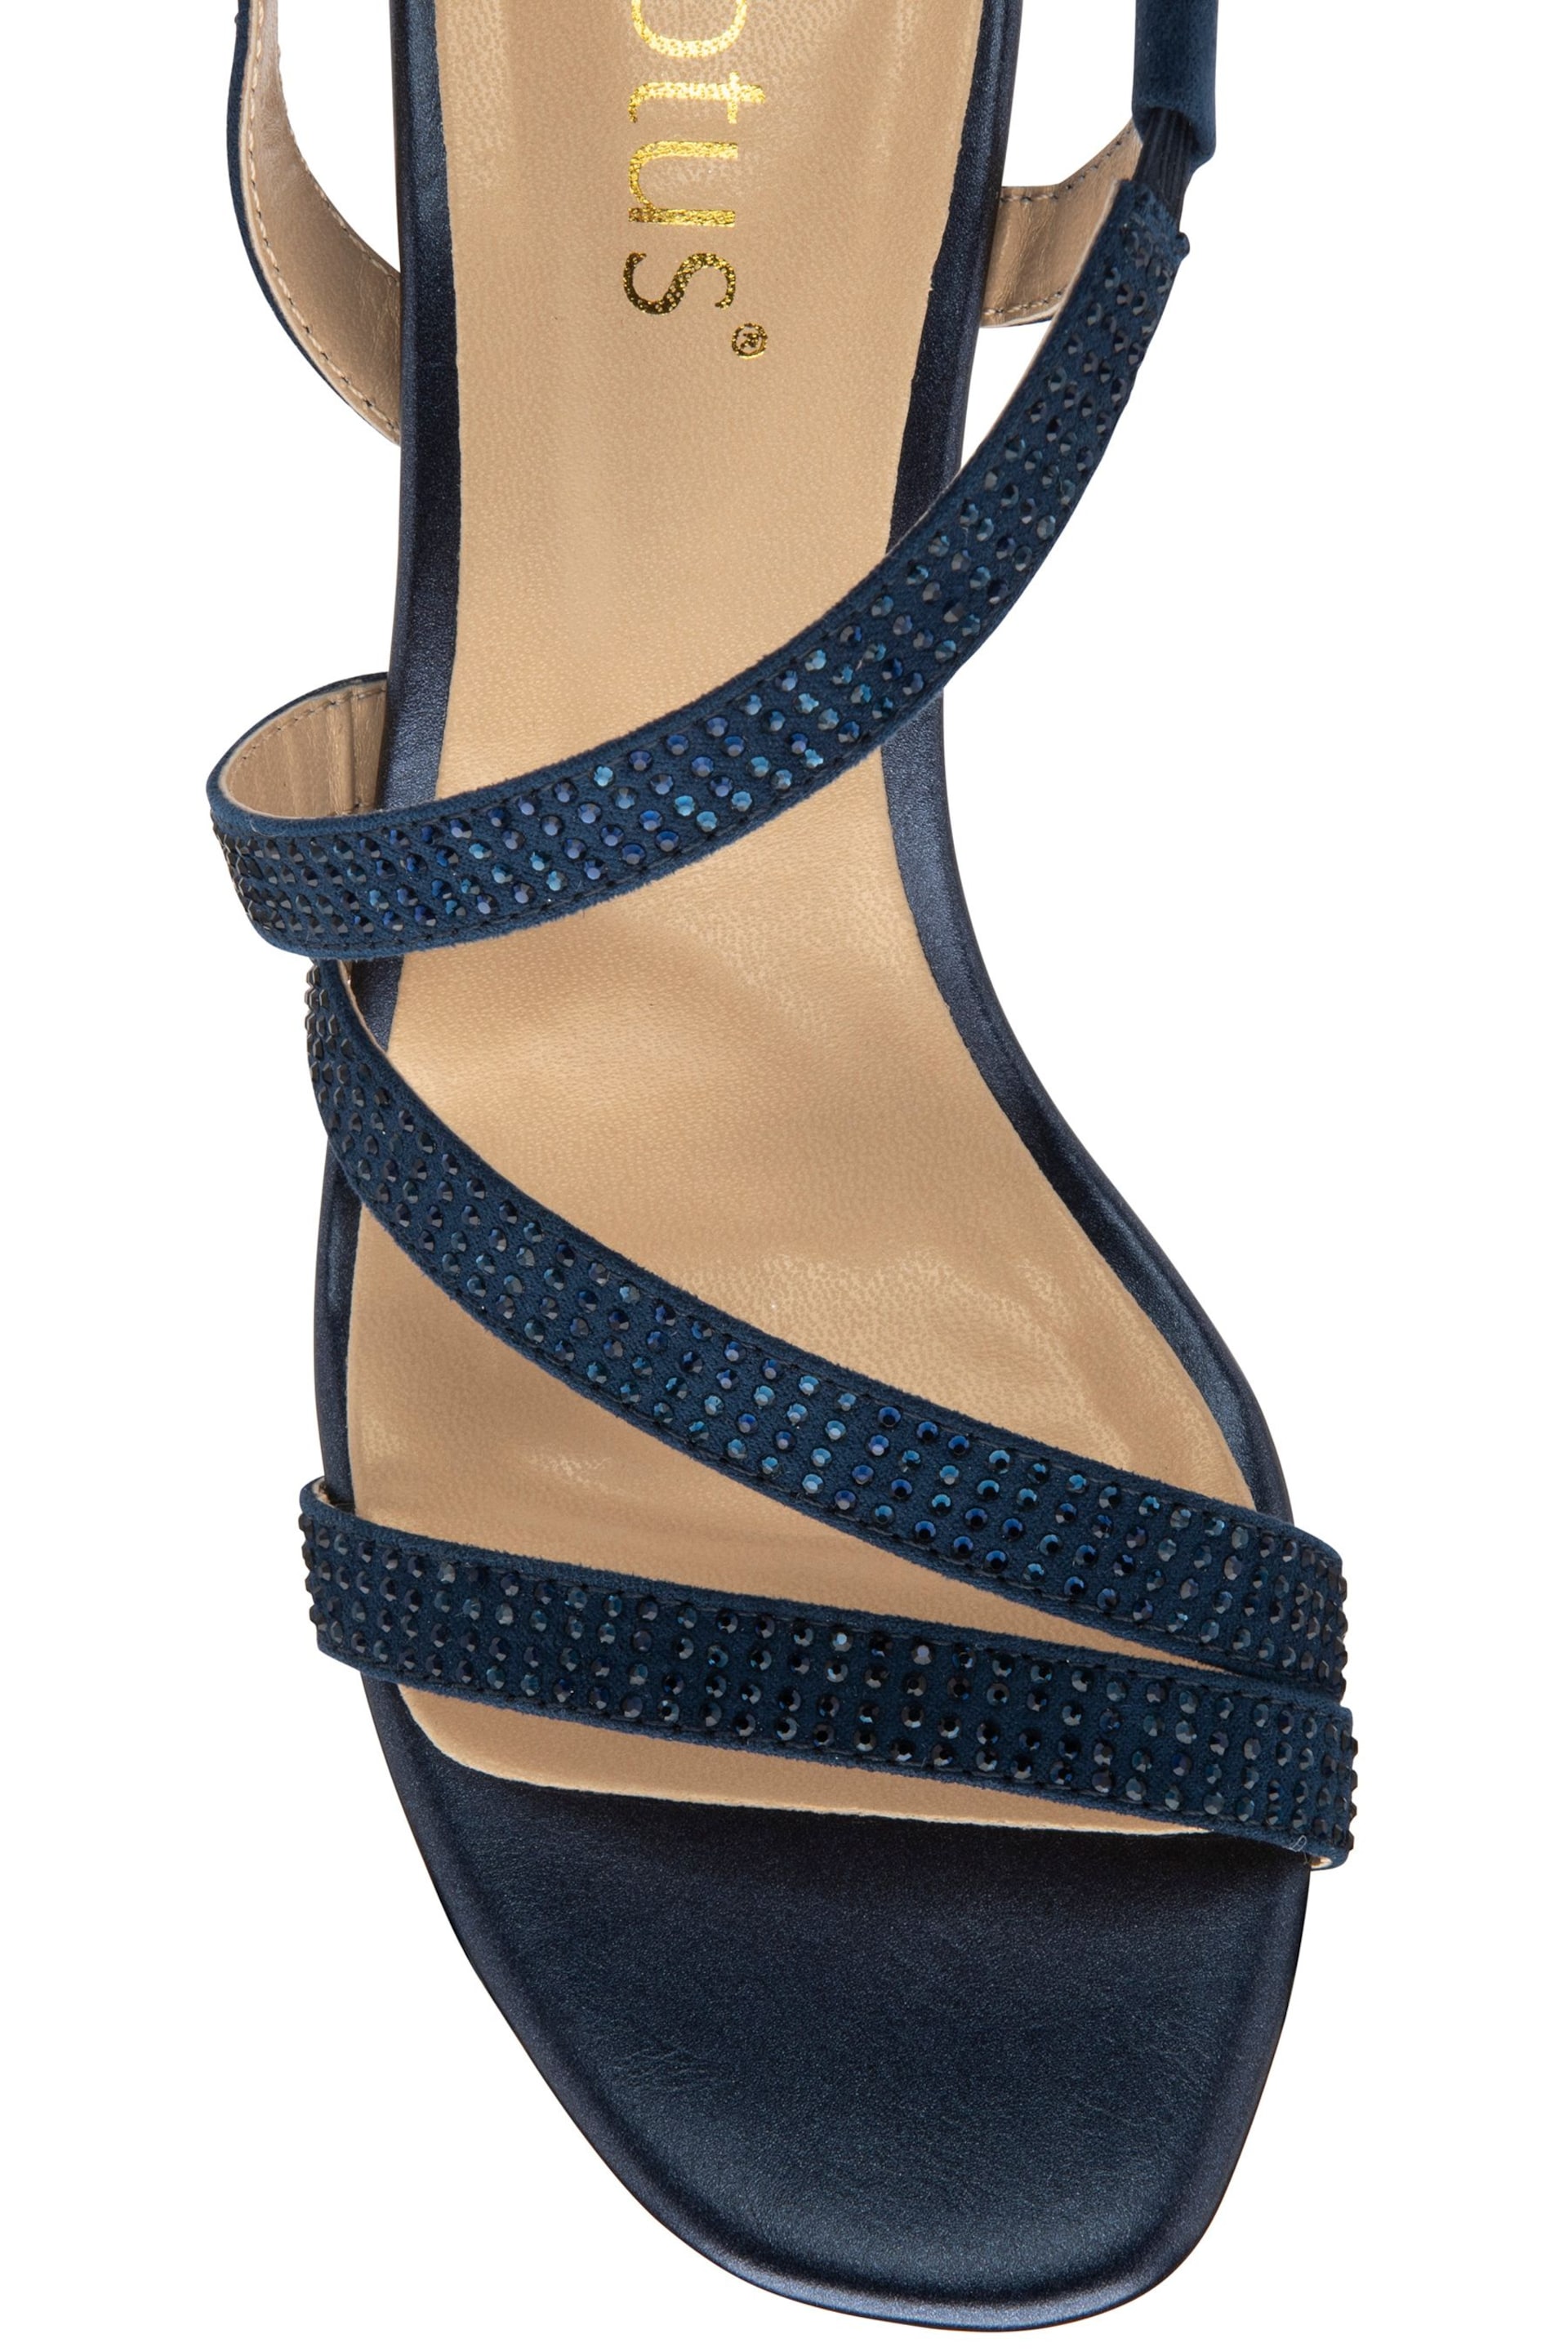 Lotus Blue Diamante Ocassion Sandals - Image 4 of 4